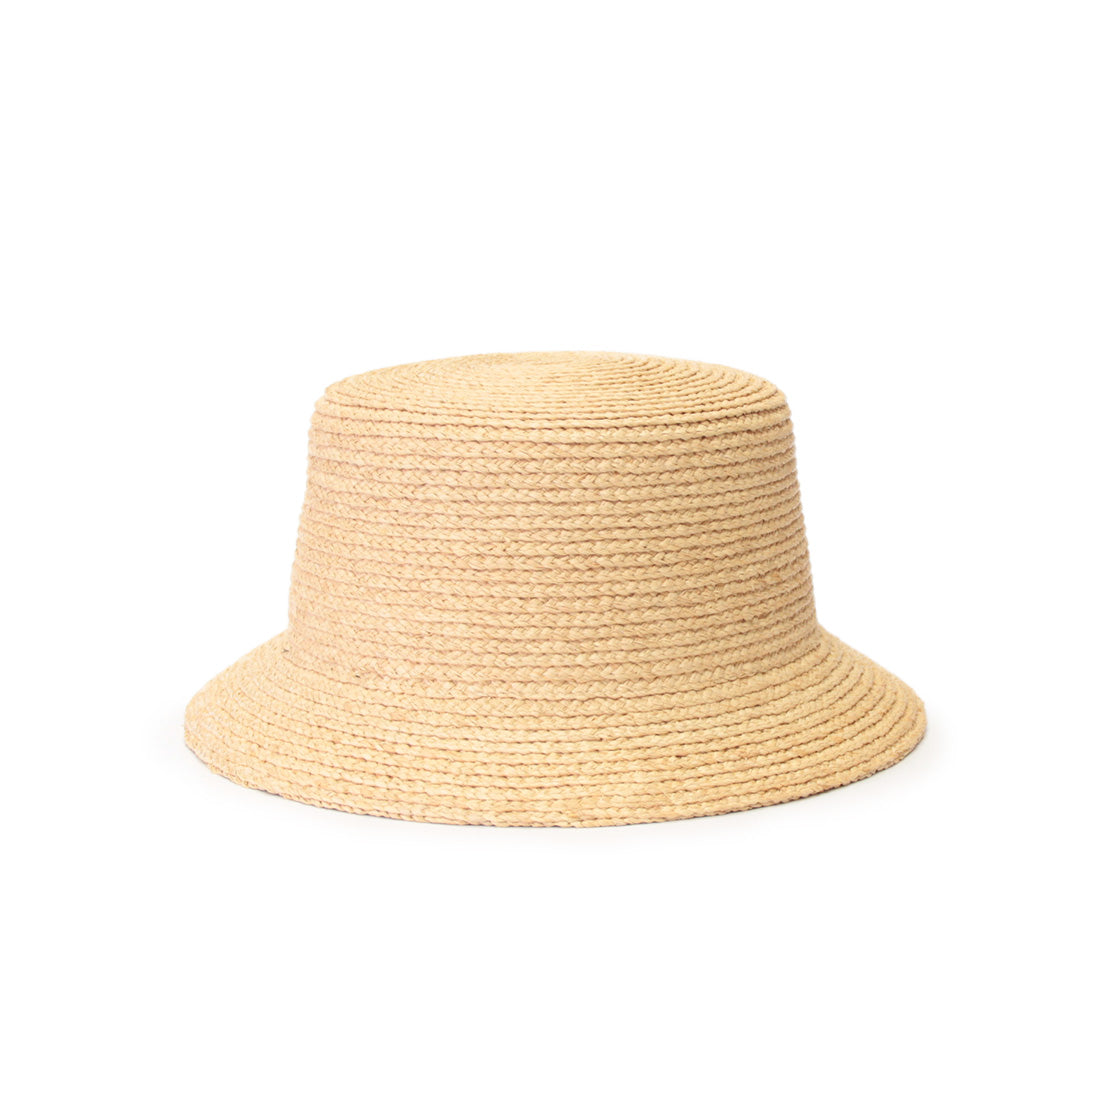 Raffia Braid Bucket Hat natural